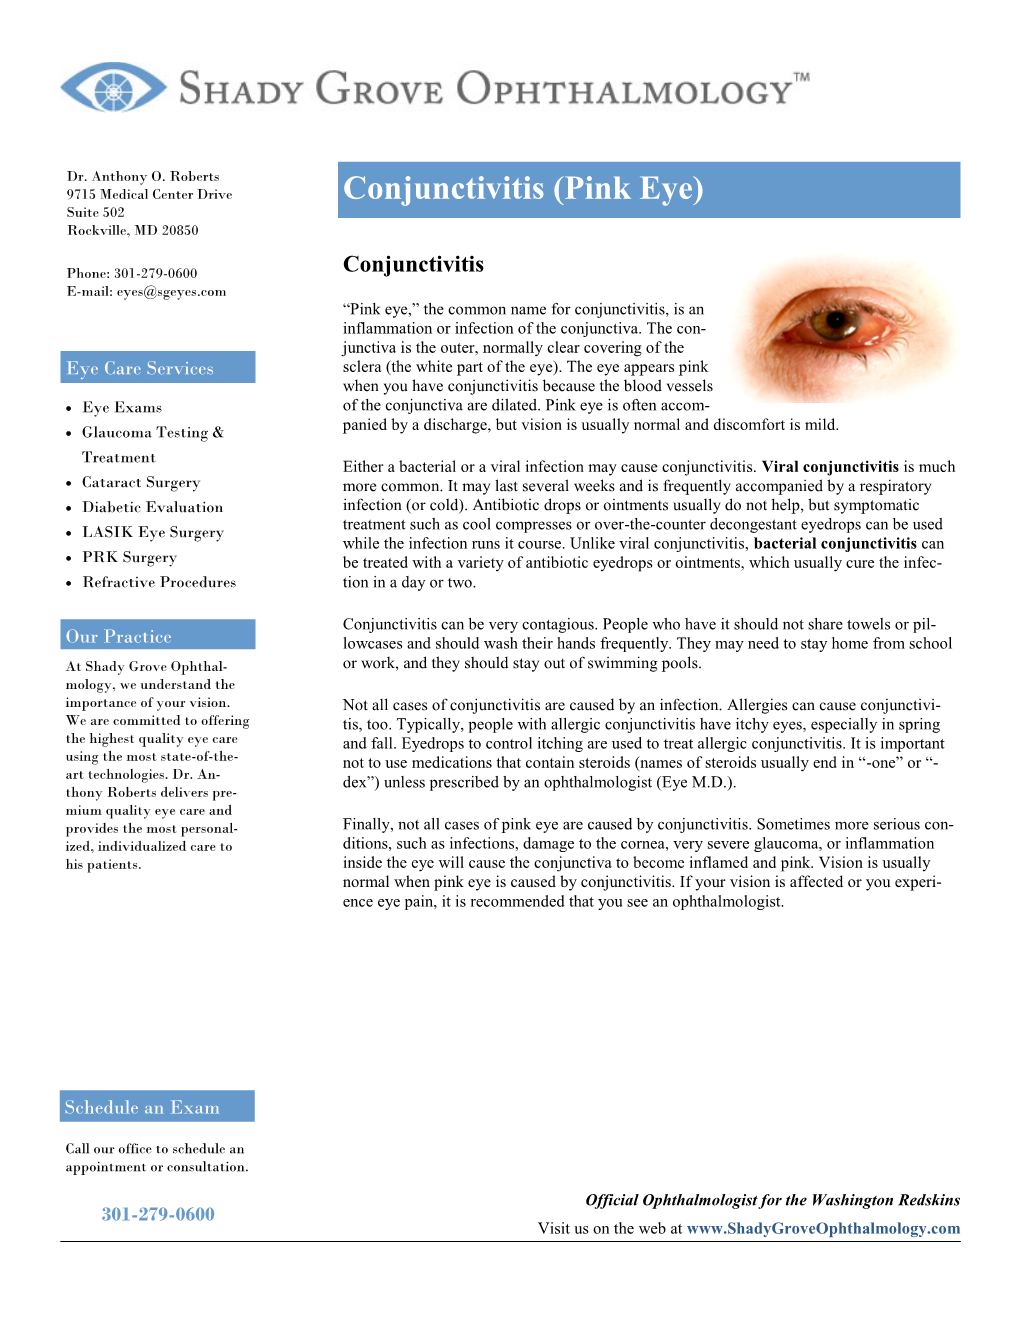 Conjunctivitis (Pink Eye) Suite 502 Rockville, MD 20850